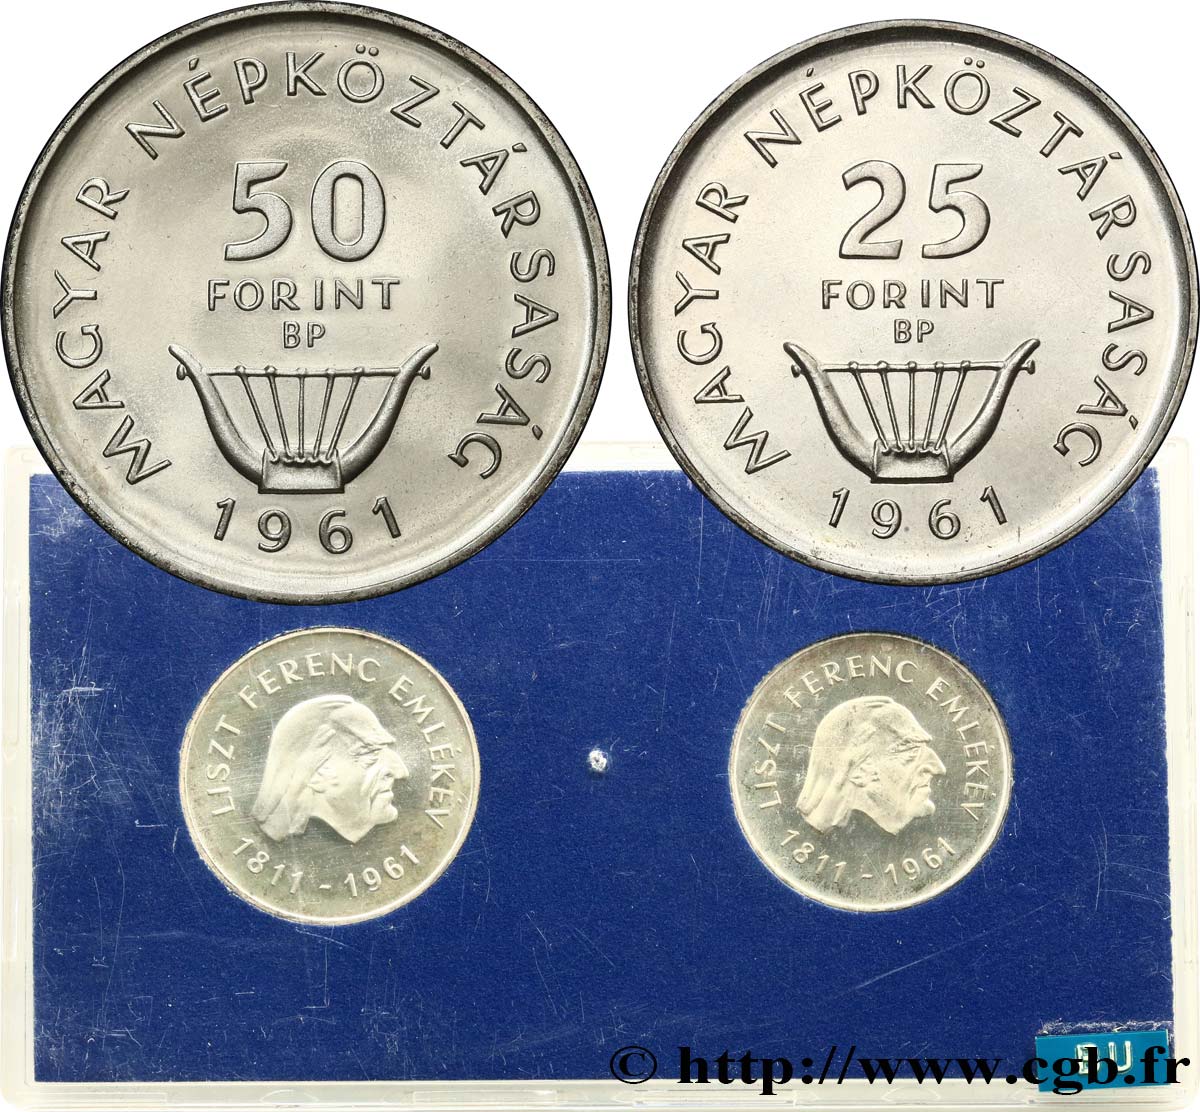 HUNGRíA Série Proof - 2 monnaies - Forint 150e anniversaire naissance de Ferenc (Franz) Liszt 1961 Budapest EBC 